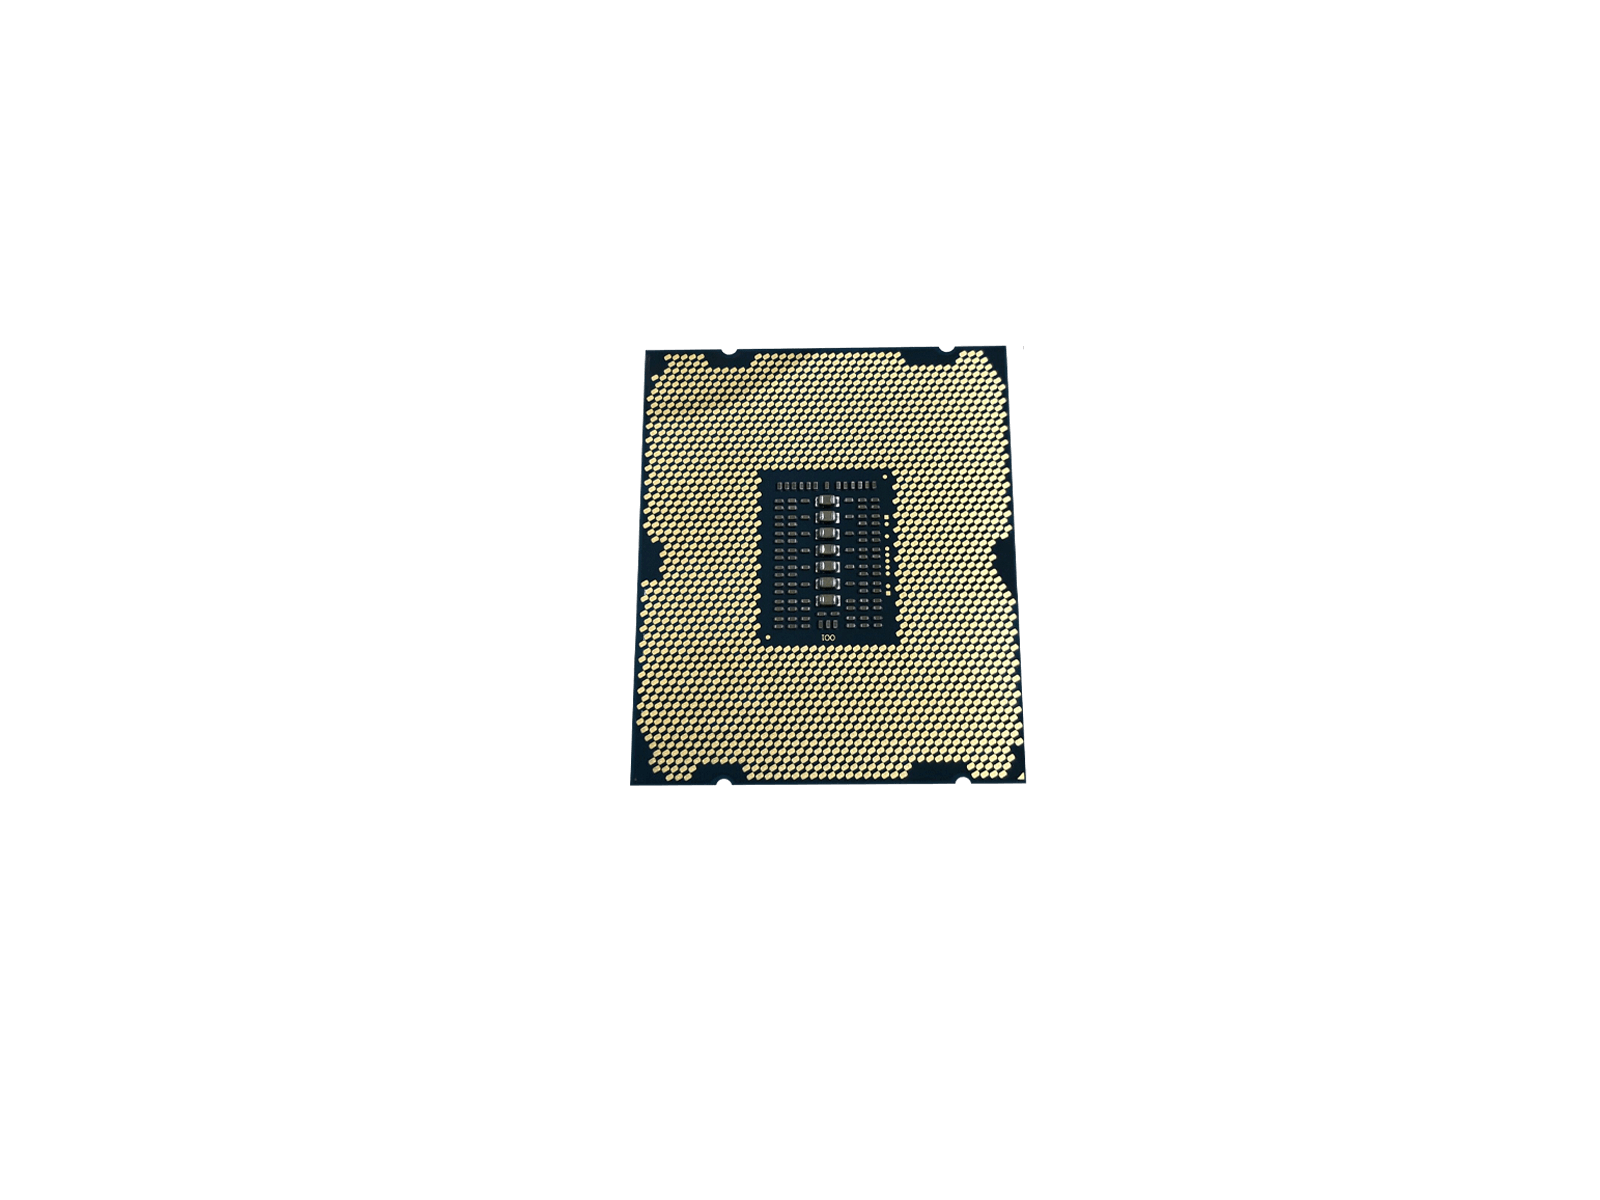 Intel Xeon E5-2690 v2 Ivy Bridge EP 10-Core 3GHz 25MB LGA2011 Socket 130W SR1A5 Processor CPU